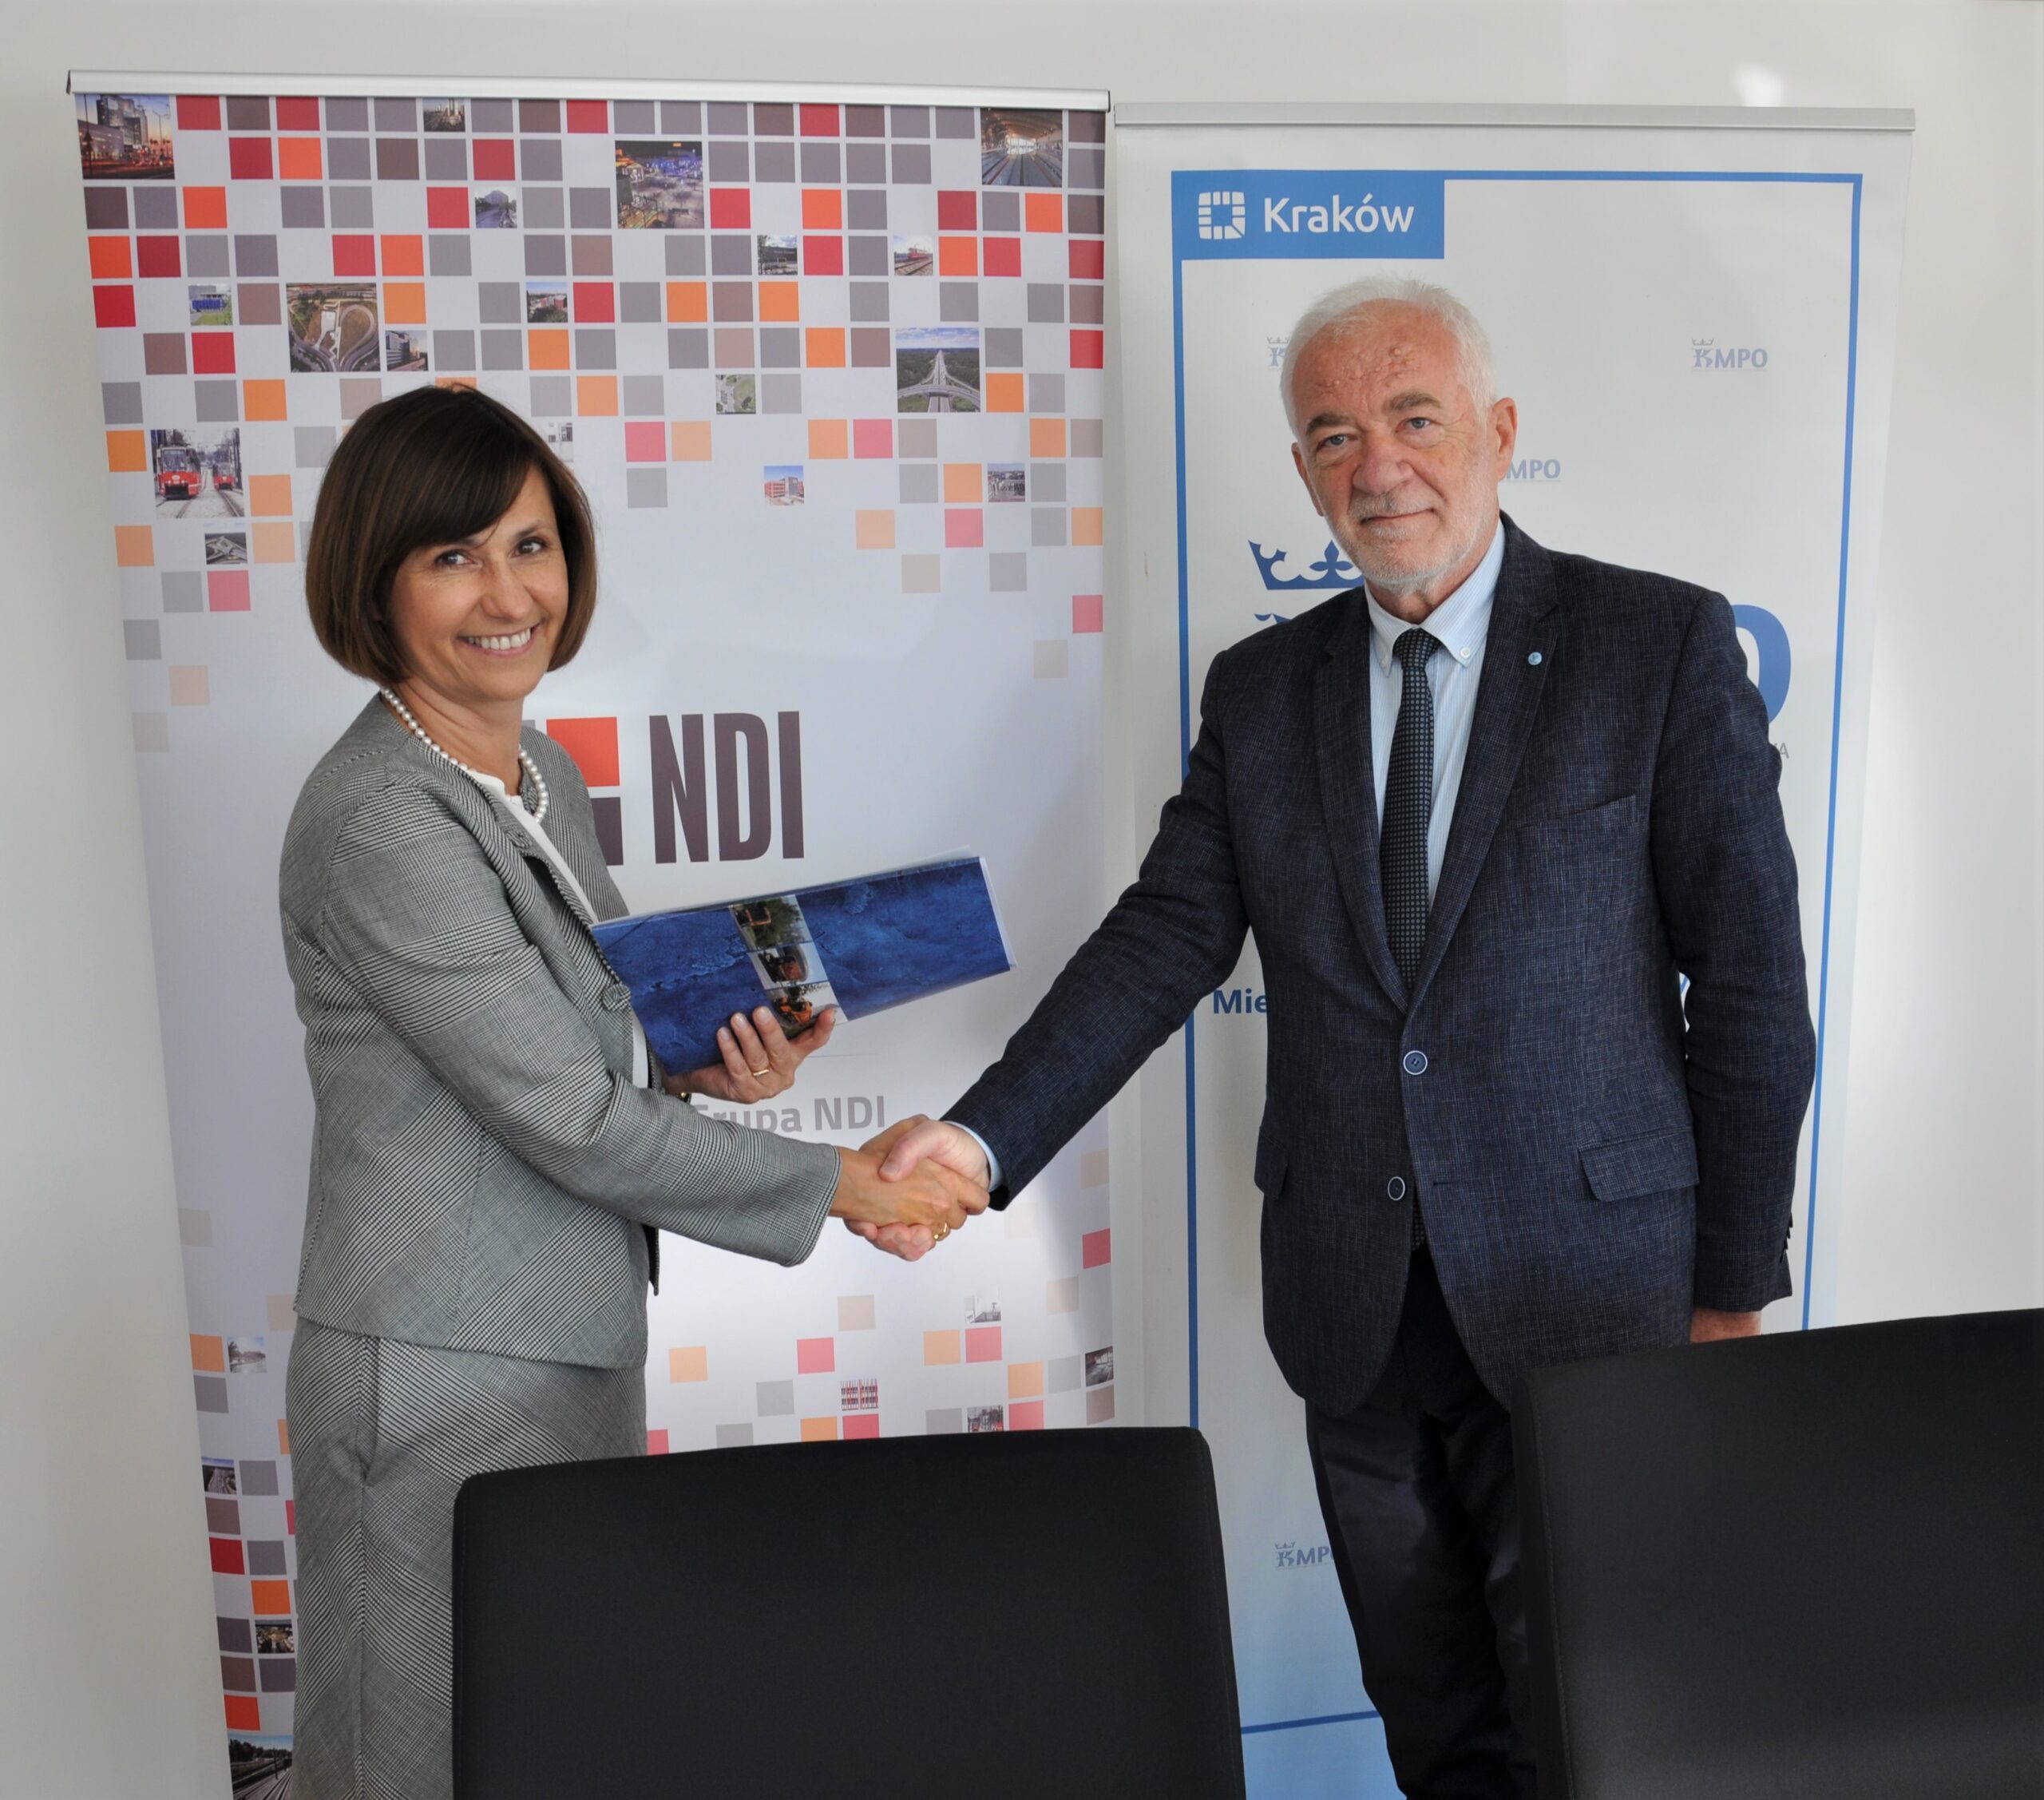 Grupa NDI wybuduje Zakład Recyklingu Tworzyw Sztucznych w Krakowie. Umowa została podpisana.